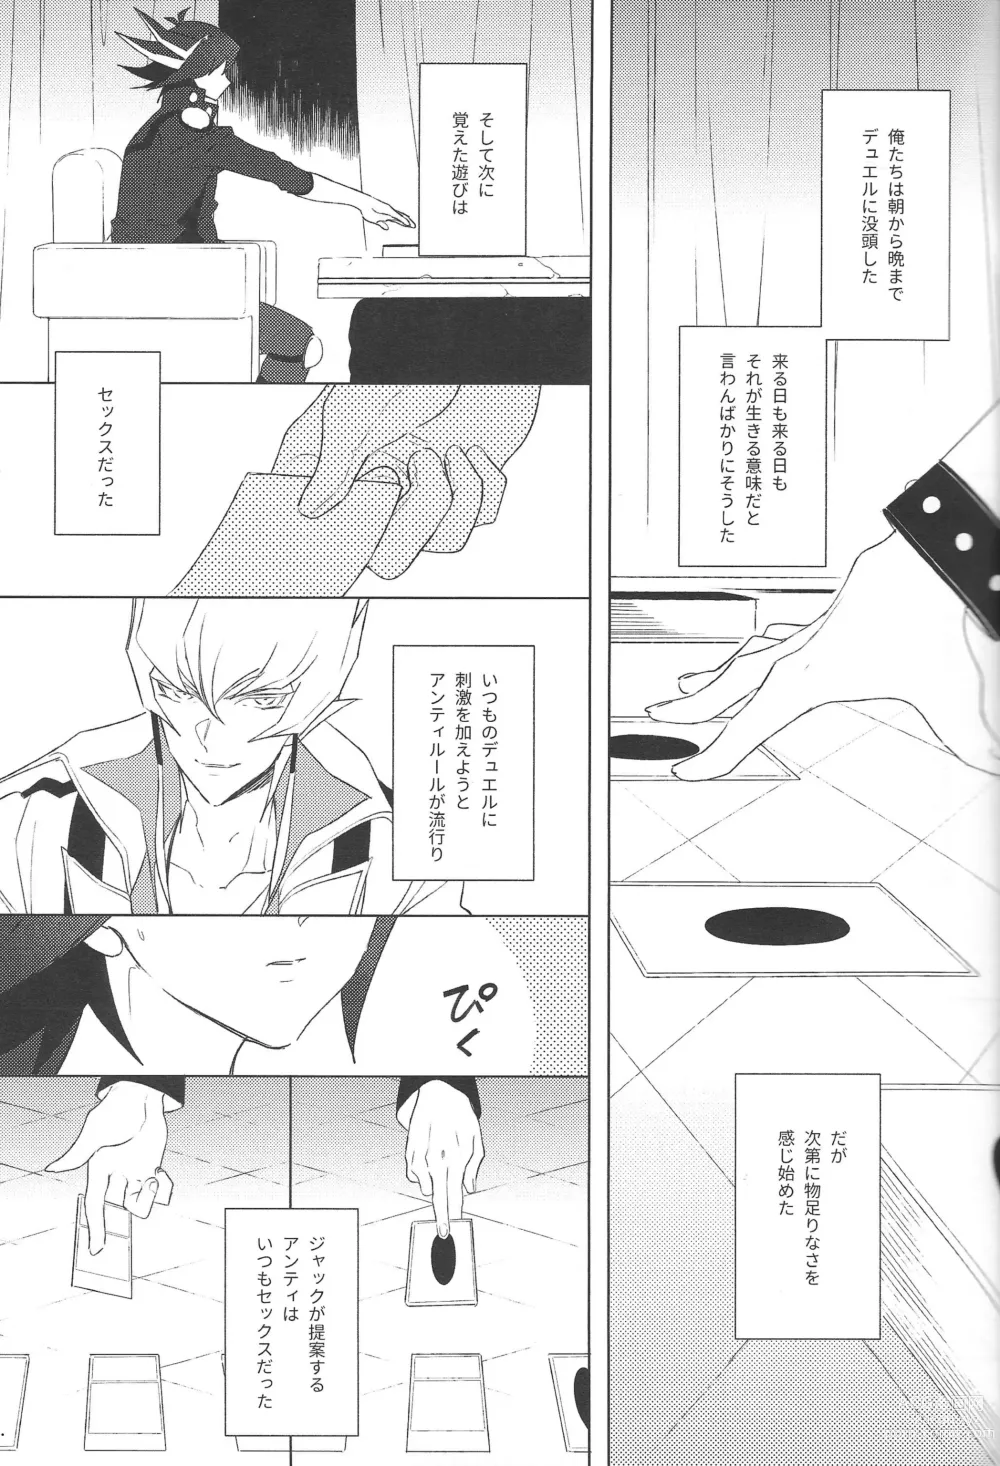 Page 4 of doujinshi Akenai Yoru no Sugoshikata